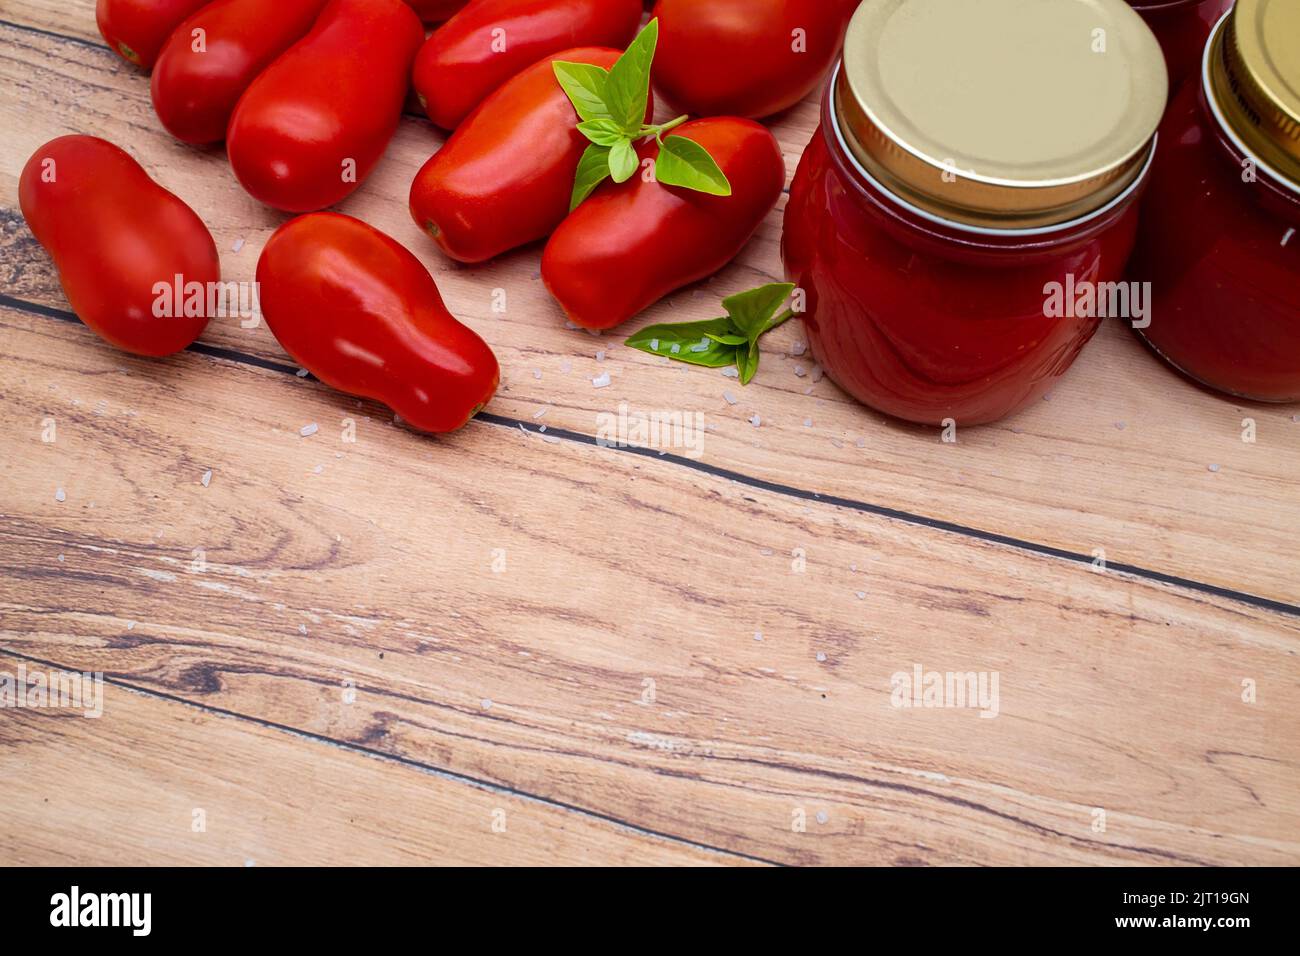 Tradizionale salsa di pomodoro italiana in un vasetto di vetro con pomodori freschi e basilico. Spazio di copia. Foto Stock